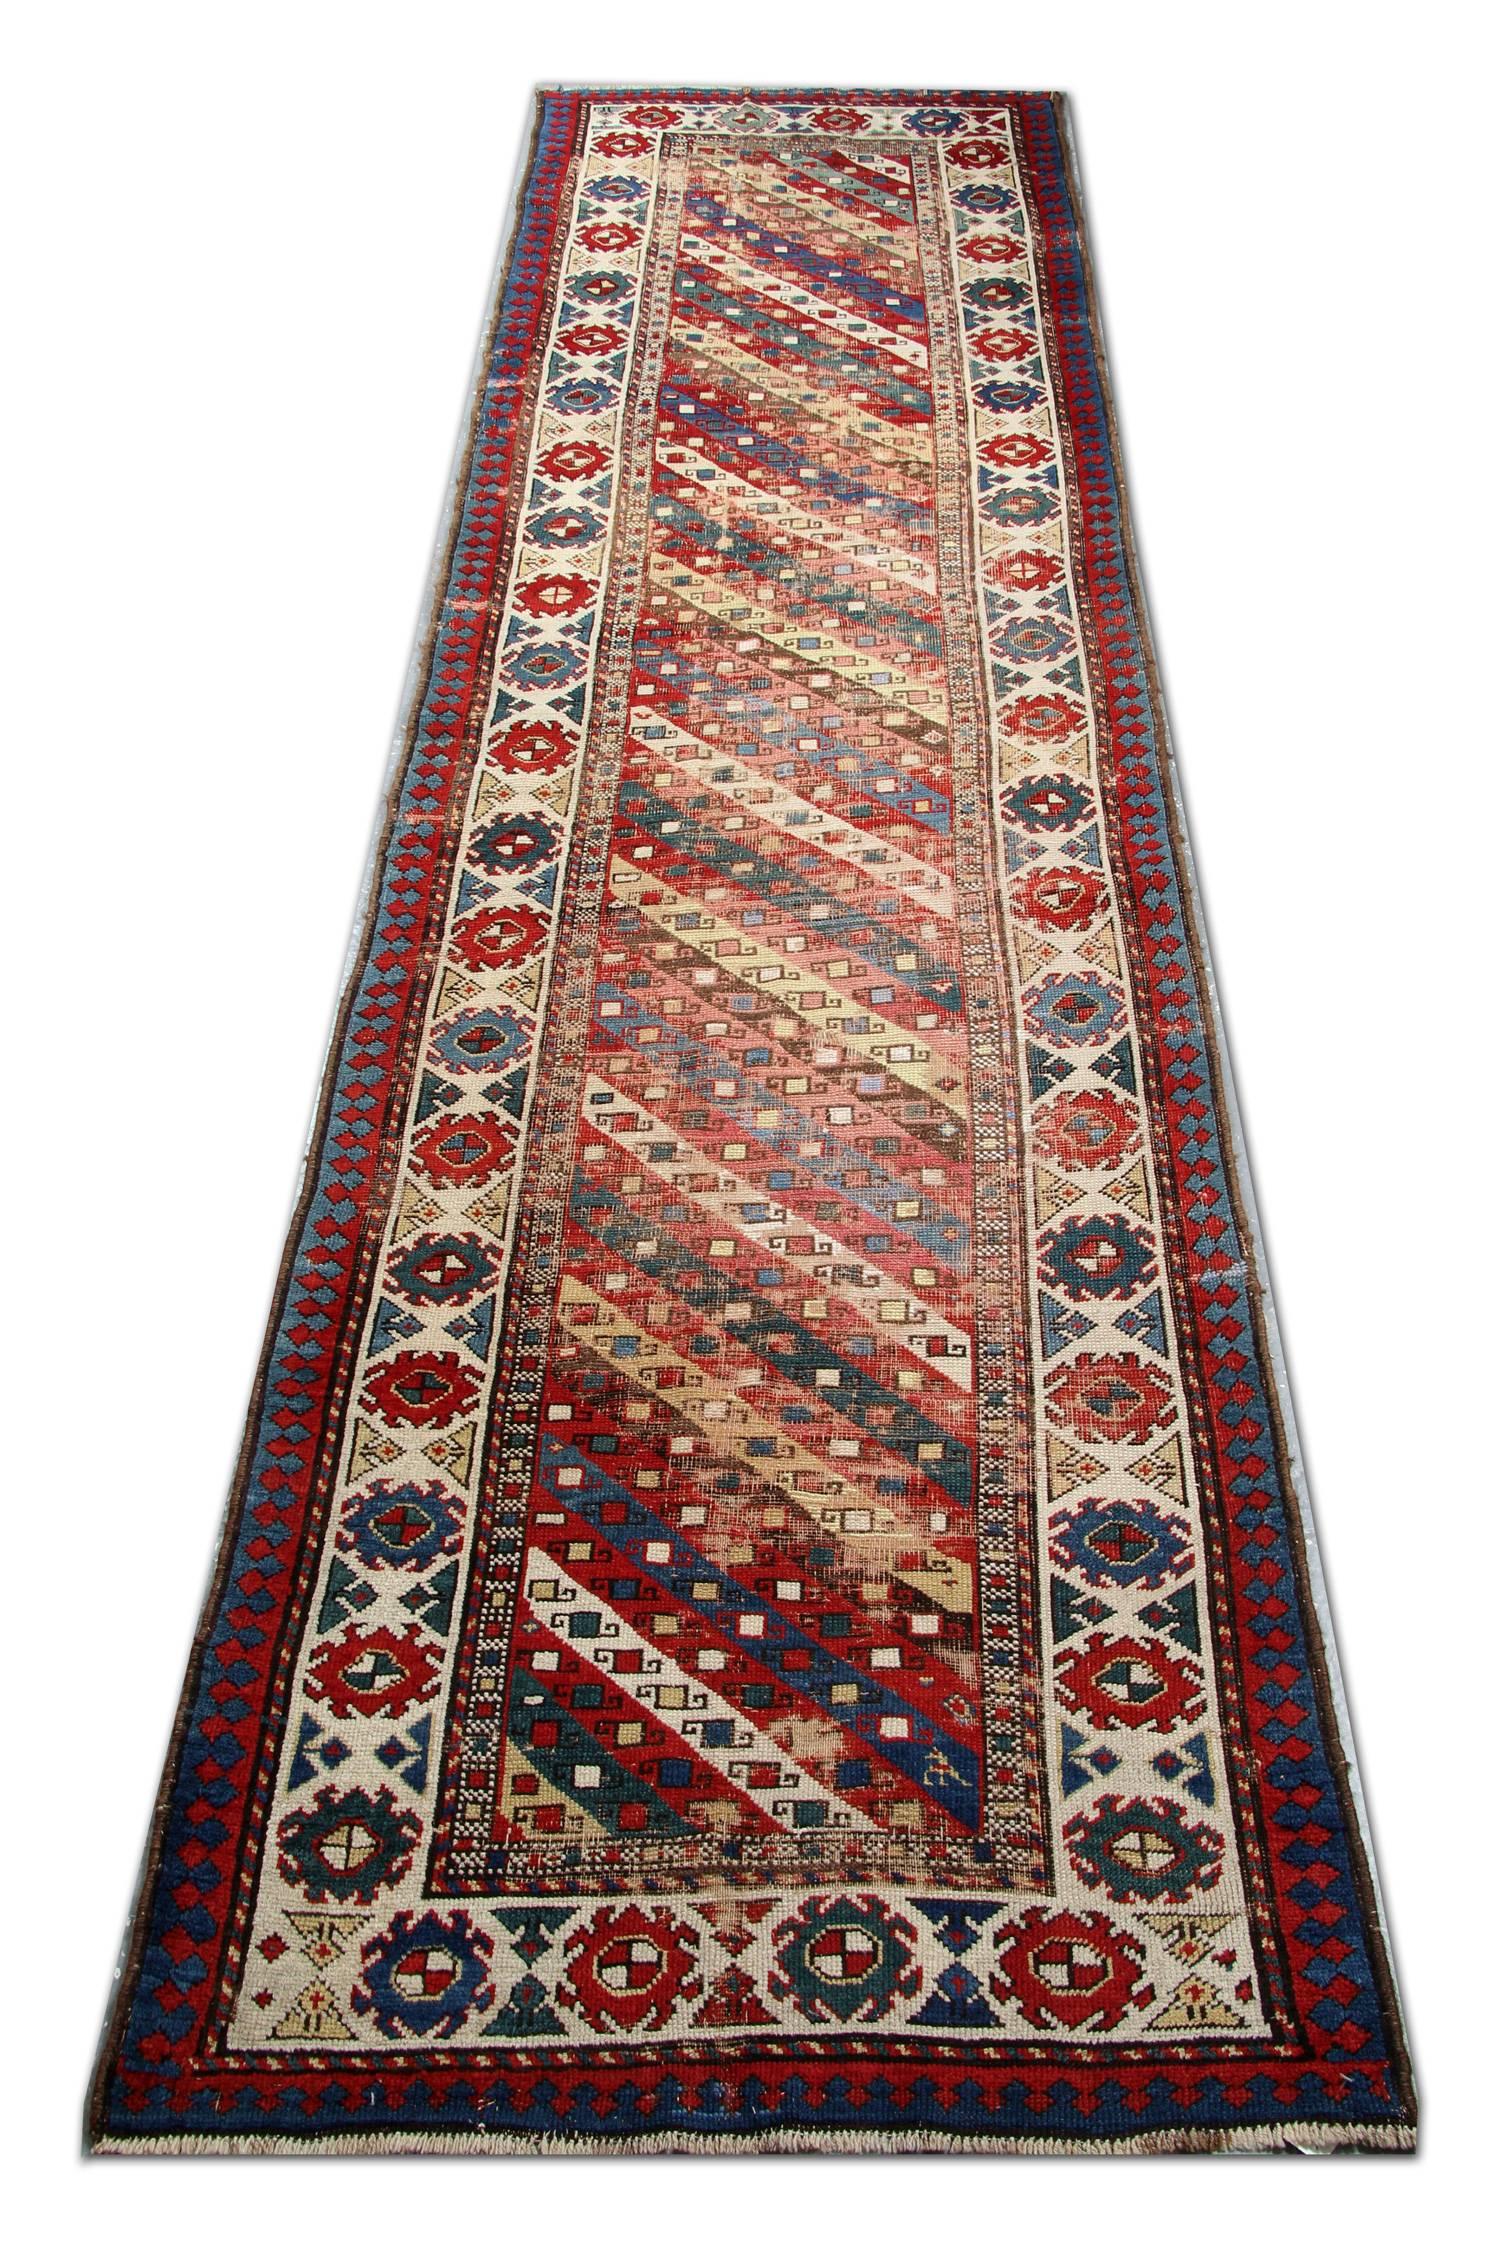 Tapis oriental fait main, né des traditions nomades, ce tapis rayé antique de Ganjeh présente un spectaculaire ensemble de rayures modulaires et de motifs de bordures classiques qui ont un style graphique linéaire de grands tapis. Le champ chaud et